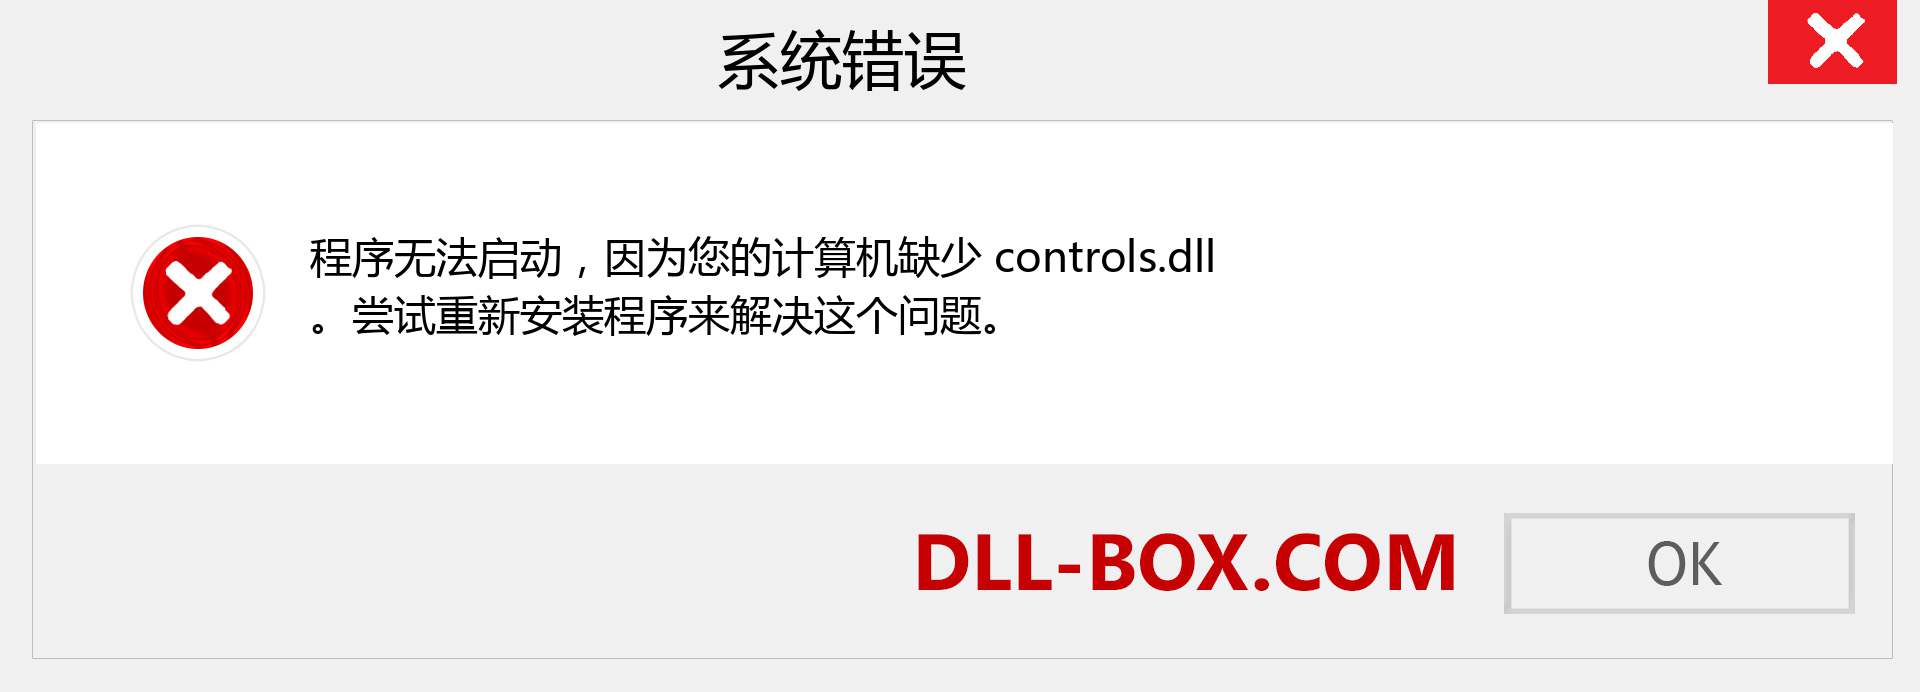 controls.dll 文件丢失？。 适用于 Windows 7、8、10 的下载 - 修复 Windows、照片、图像上的 controls dll 丢失错误